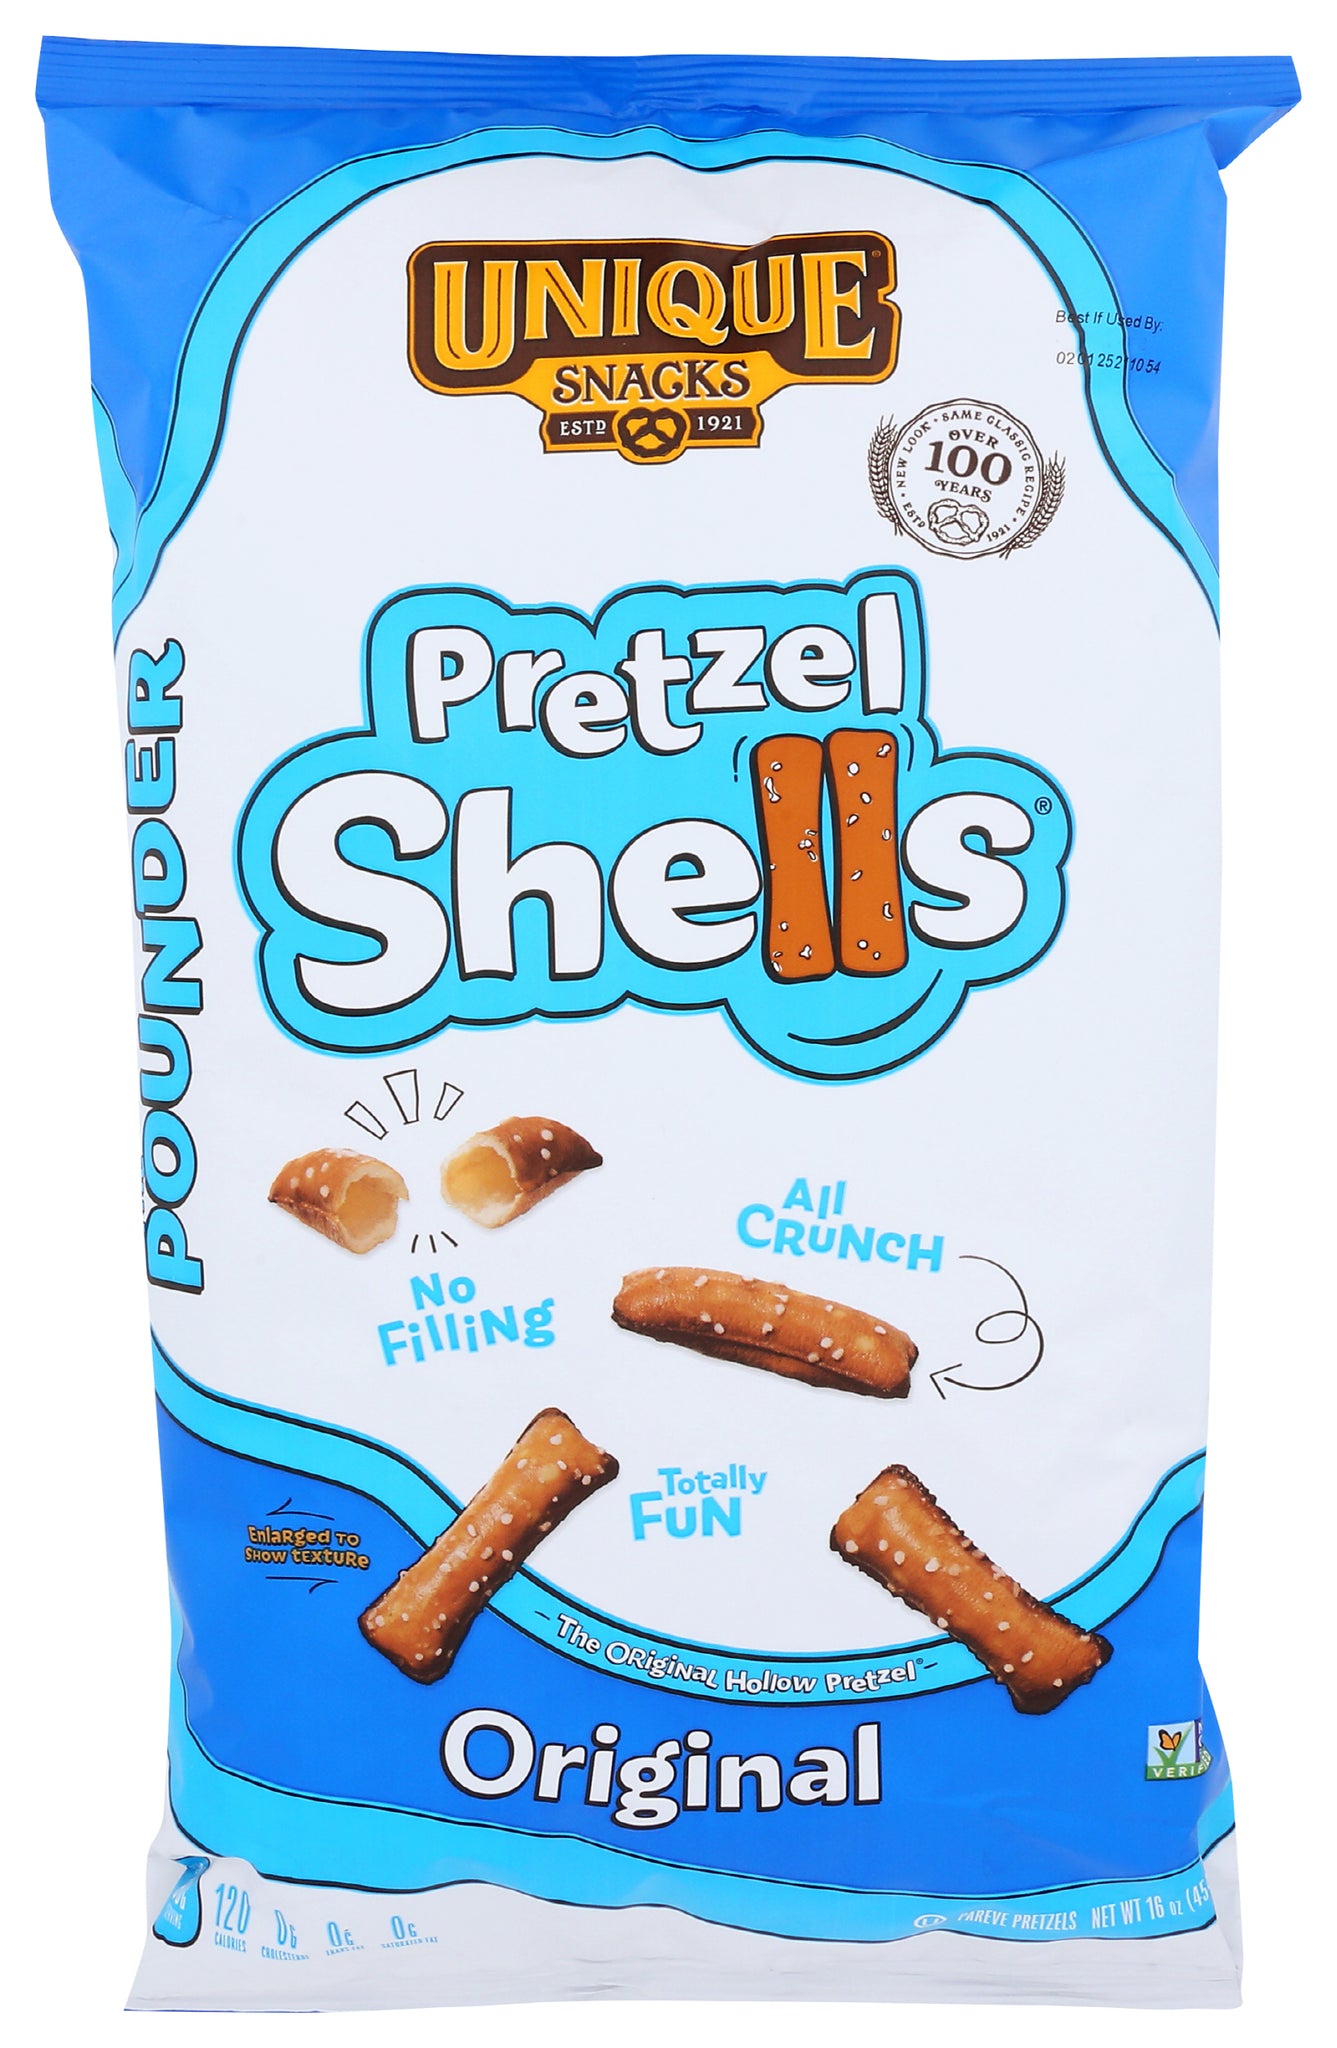 Unique Snacks - Pretzels The Pounder Pretzel Shells